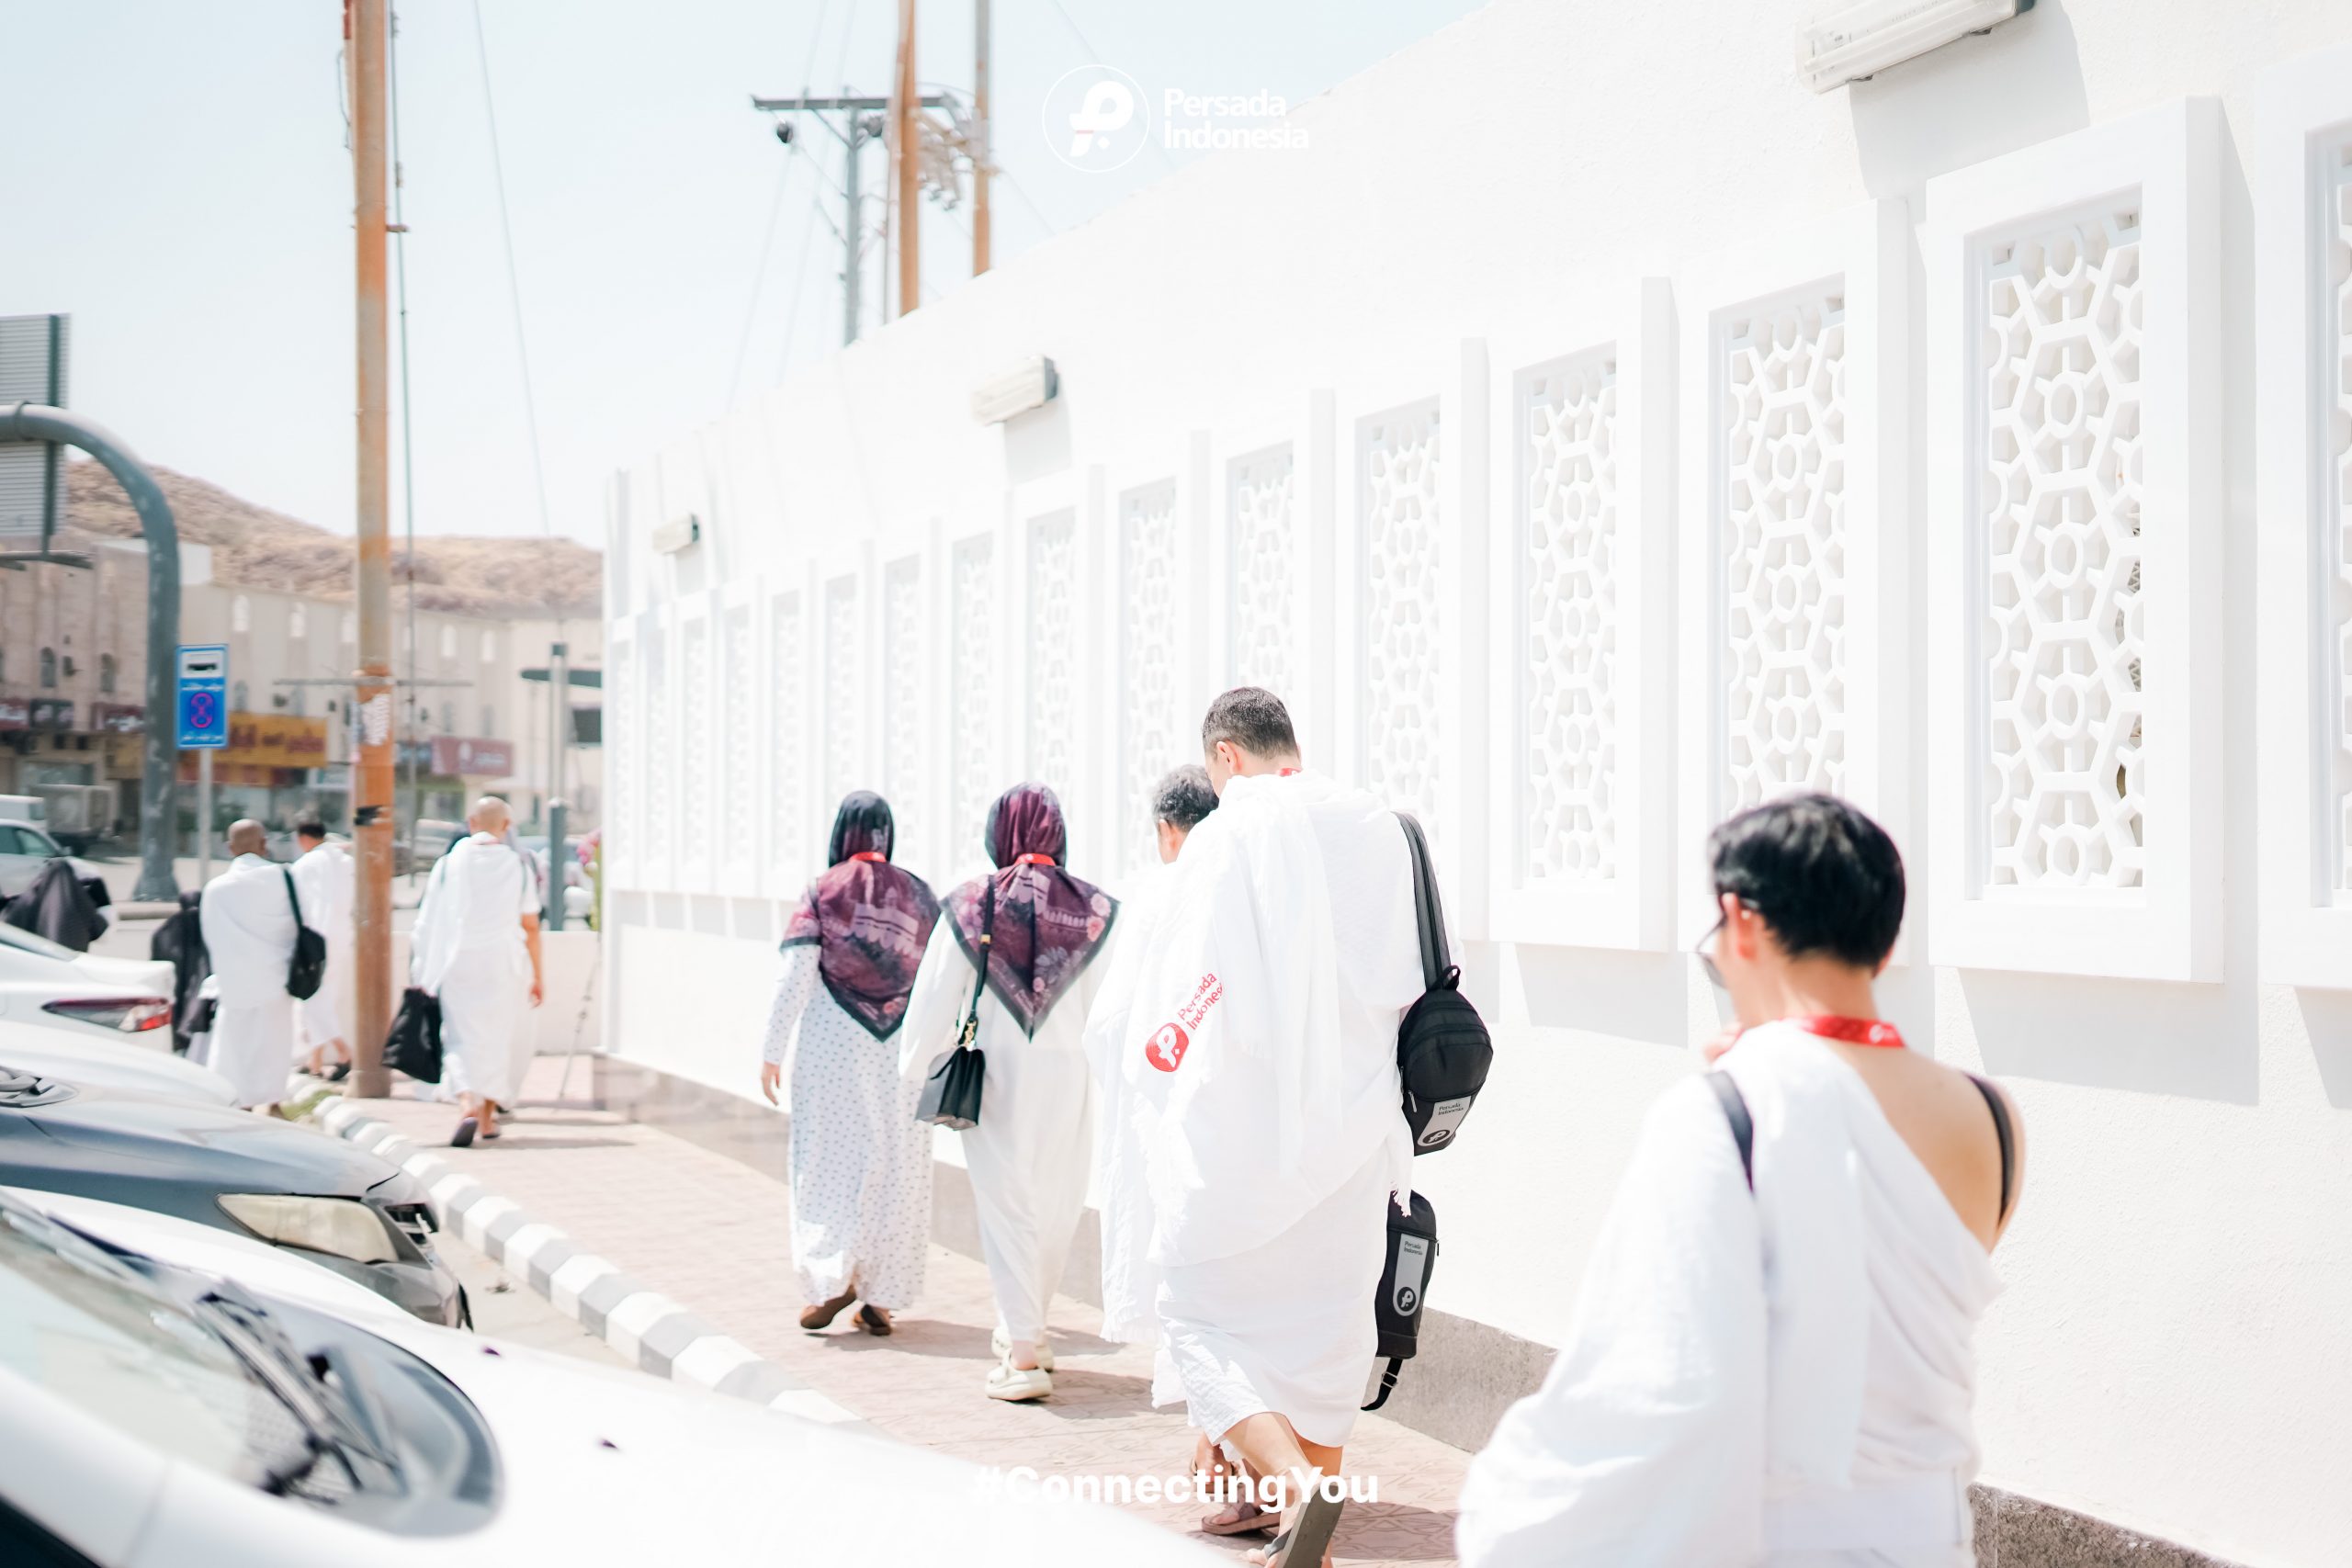 Apakah Umrah di Bulan Ramadhan Sama dengan Haji